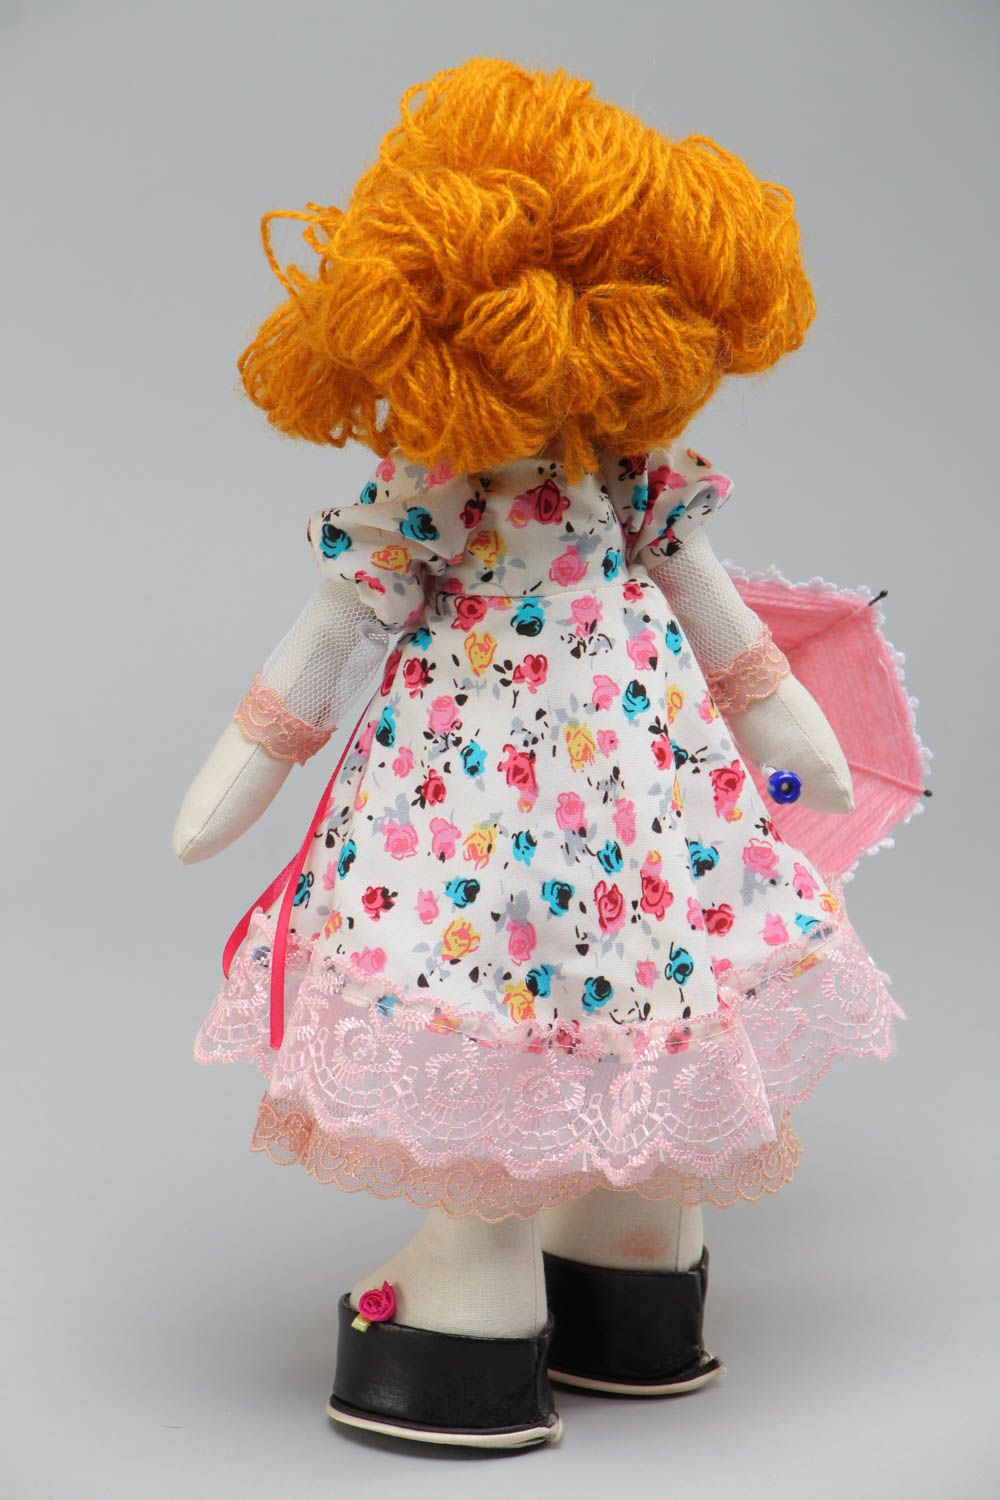 Авторская мягкая кукла с зонтиком для интерьера из хлопка и атласа ручная работа фото 3